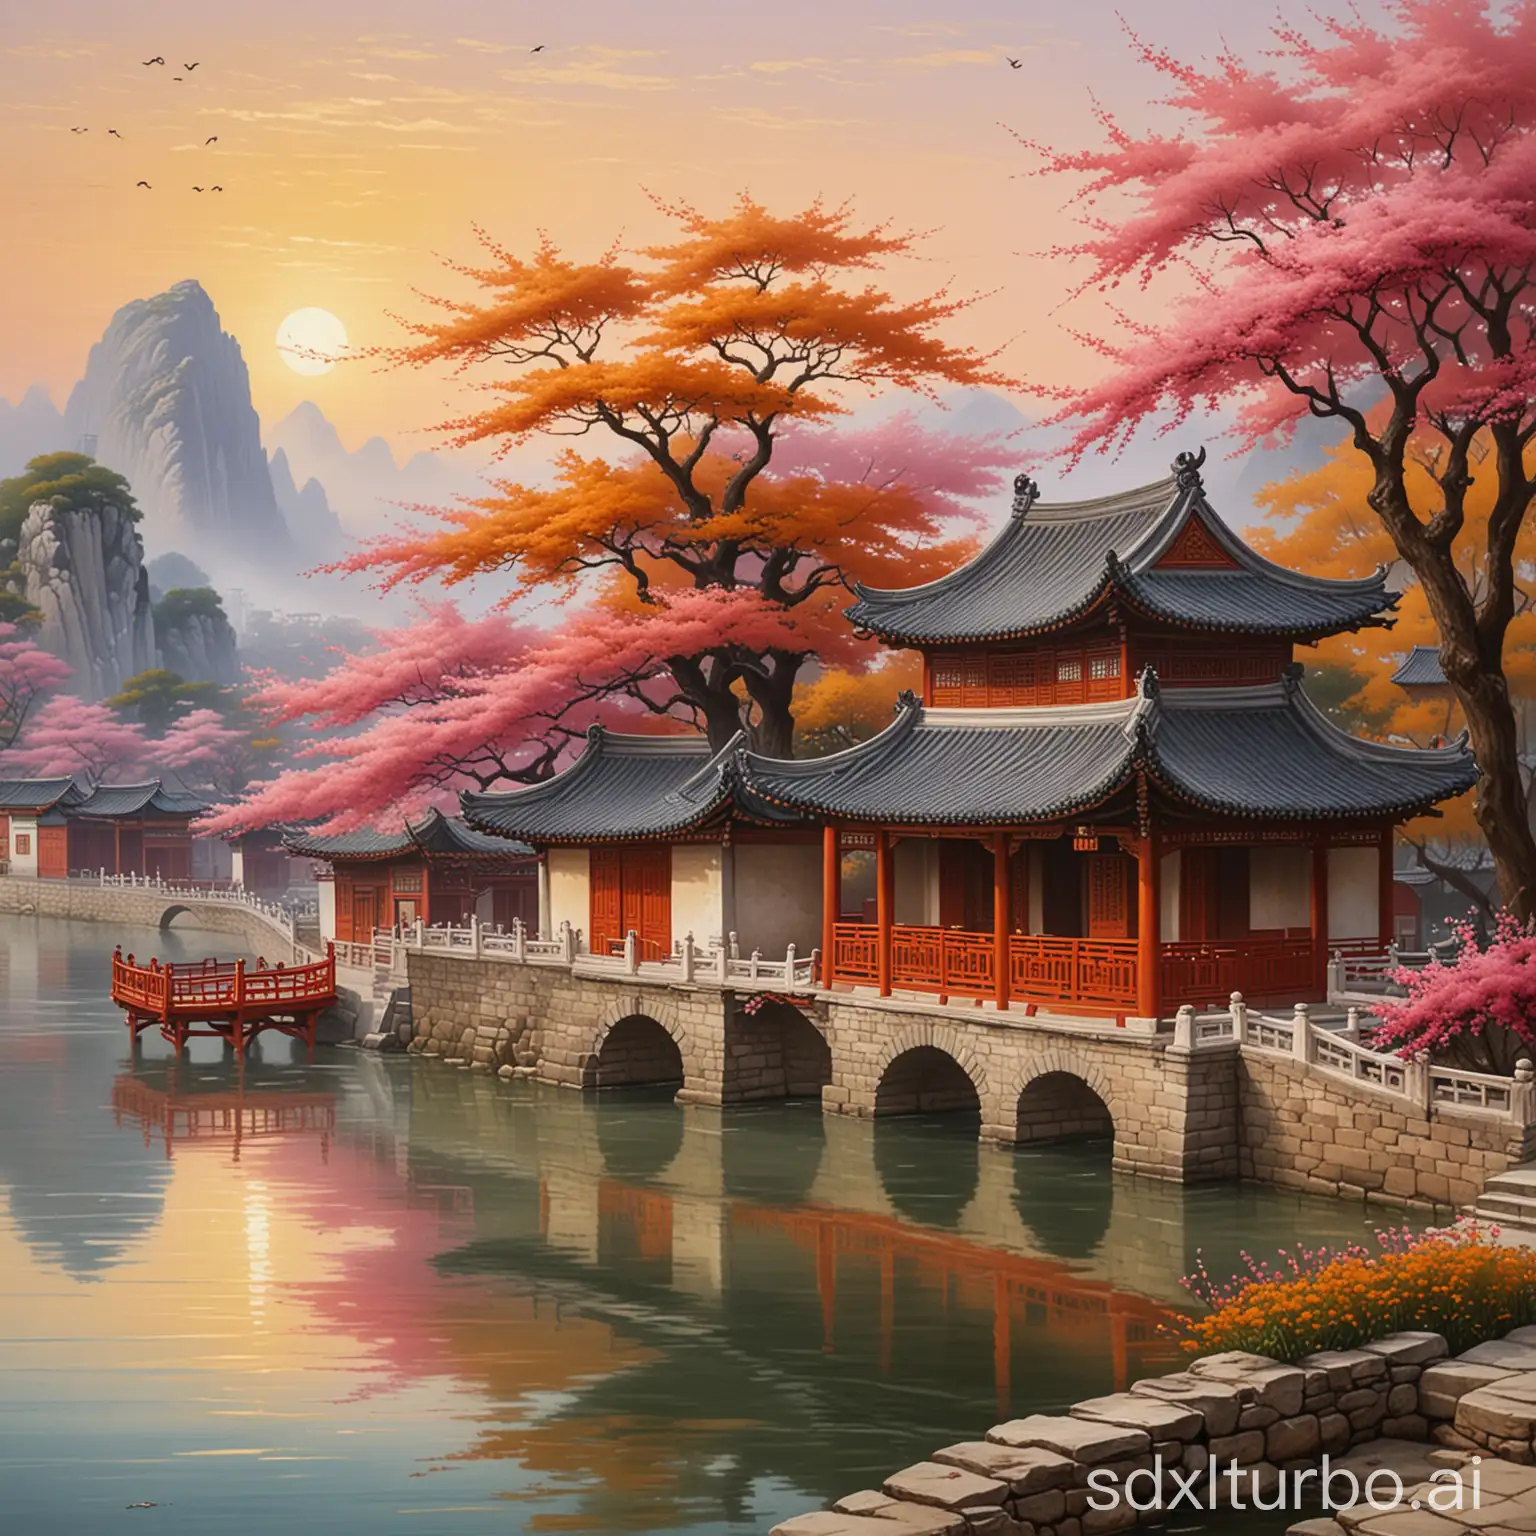 这是一幅描绘中国古典建筑和水乡风光的画作。画面中，一座古色古香的亭台楼阁矗立在河畔，其屋顶上翘起的飞檐和红色的门窗显得非常精致。河流两侧是石板路和树木，其中一棵树上开满了粉红色的花朵，为整个场景增添了几分生机。远处可以看到现代化的高楼大厦，与近处的传统建筑形成了鲜明对比。天空呈现出温暖的橙黄色调，暗示着日出或日落时分。整幅画色彩柔和而协调，营造出一种宁静祥和的氛围。